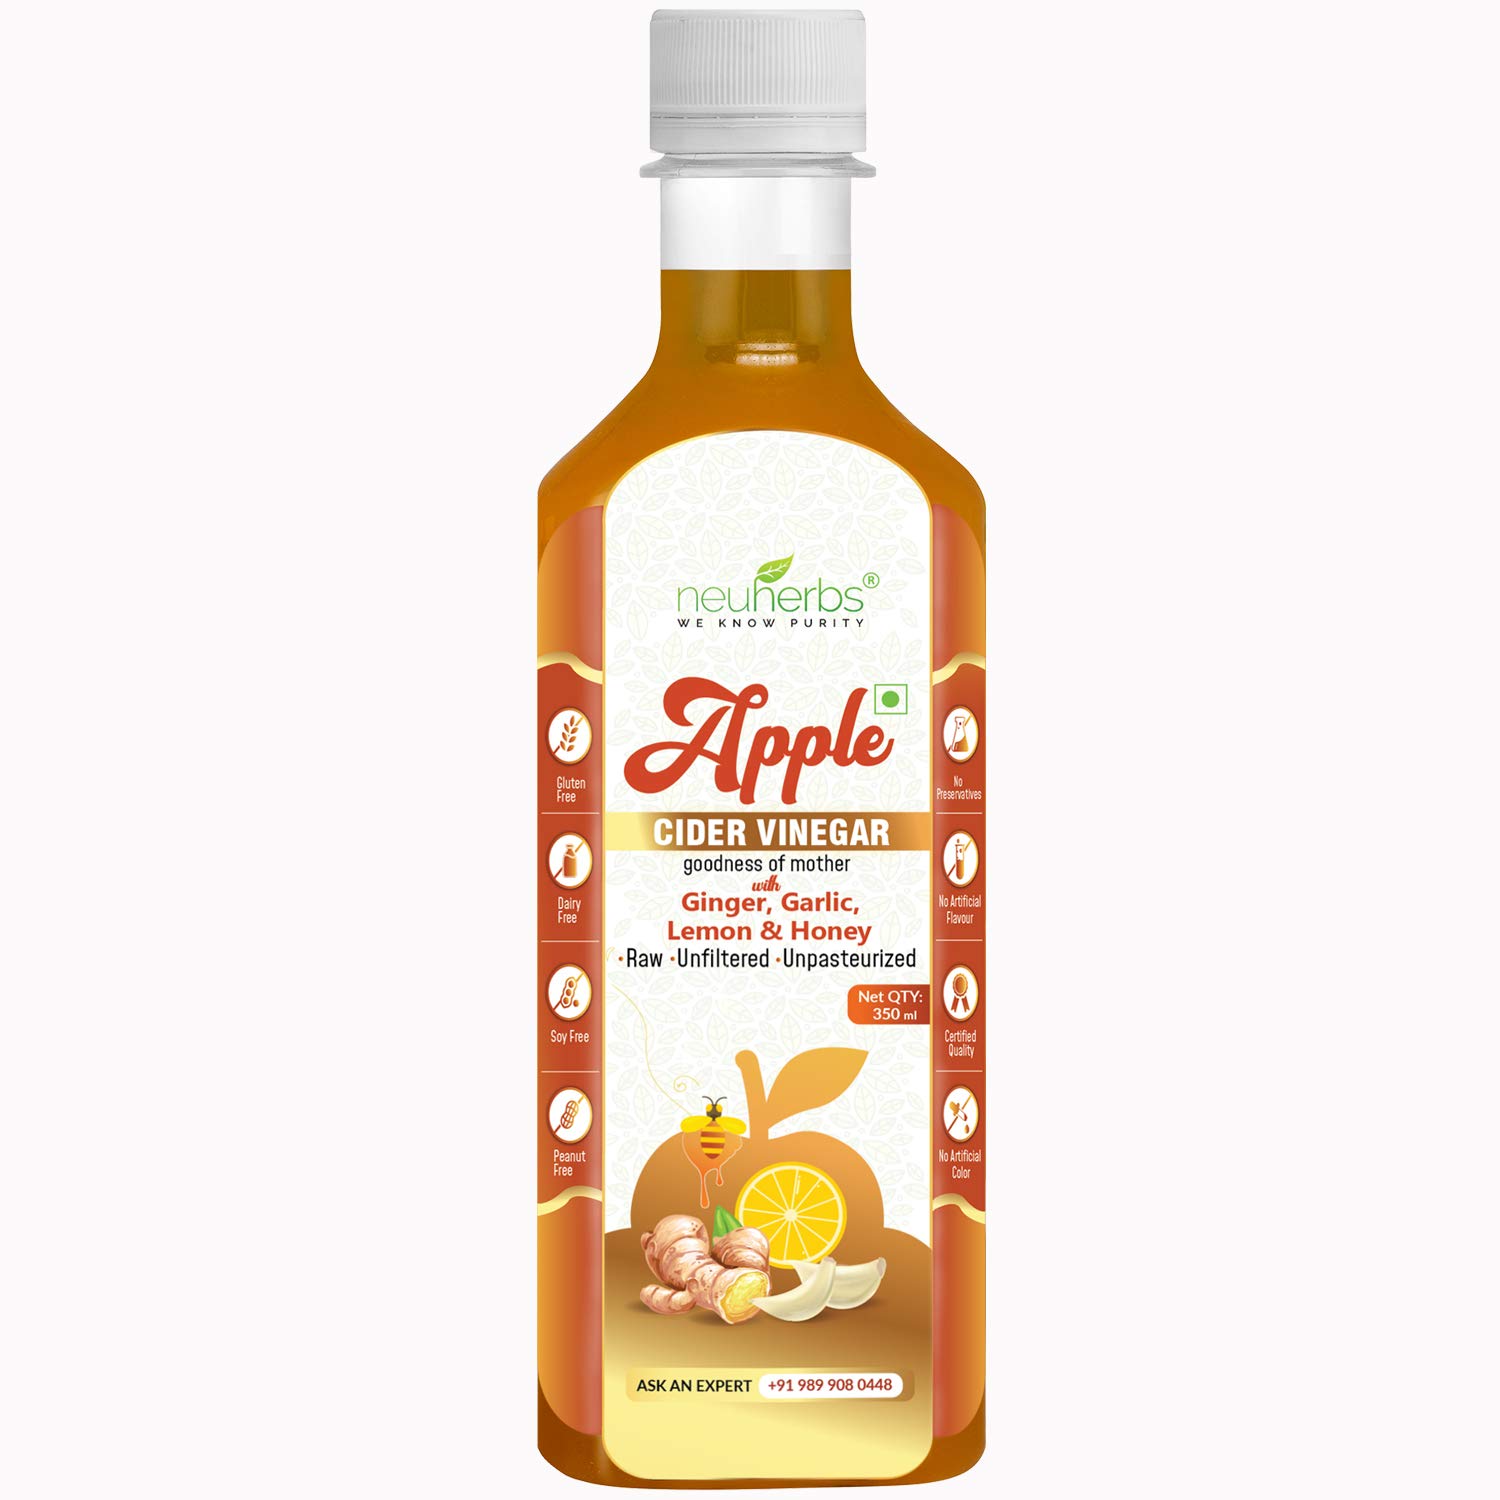 Neuherbs Apple Cider Vinegar with Ginger Garlic Lemon & Honey Image